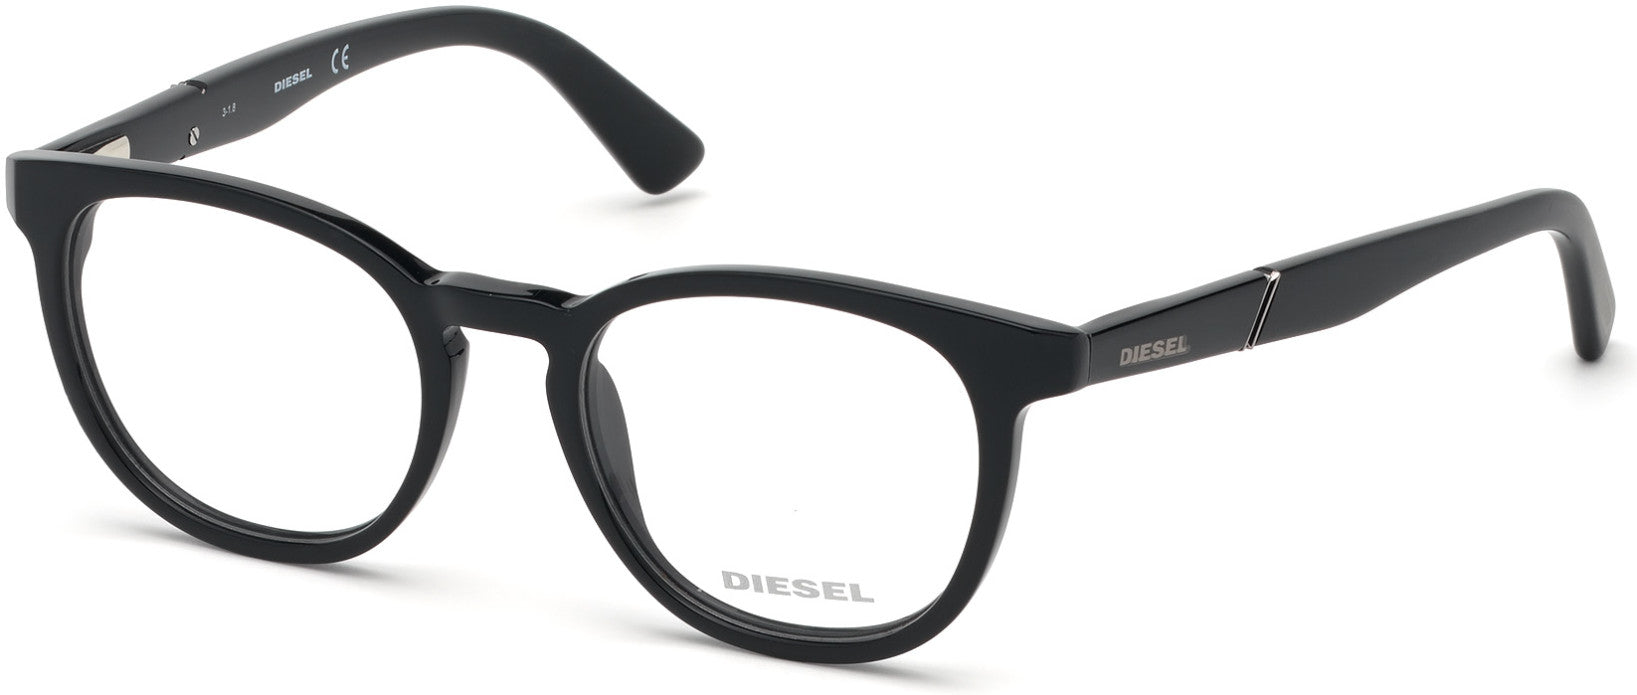 Diesel DL5295 Round Eyeglasses 001-001 - Shiny Black